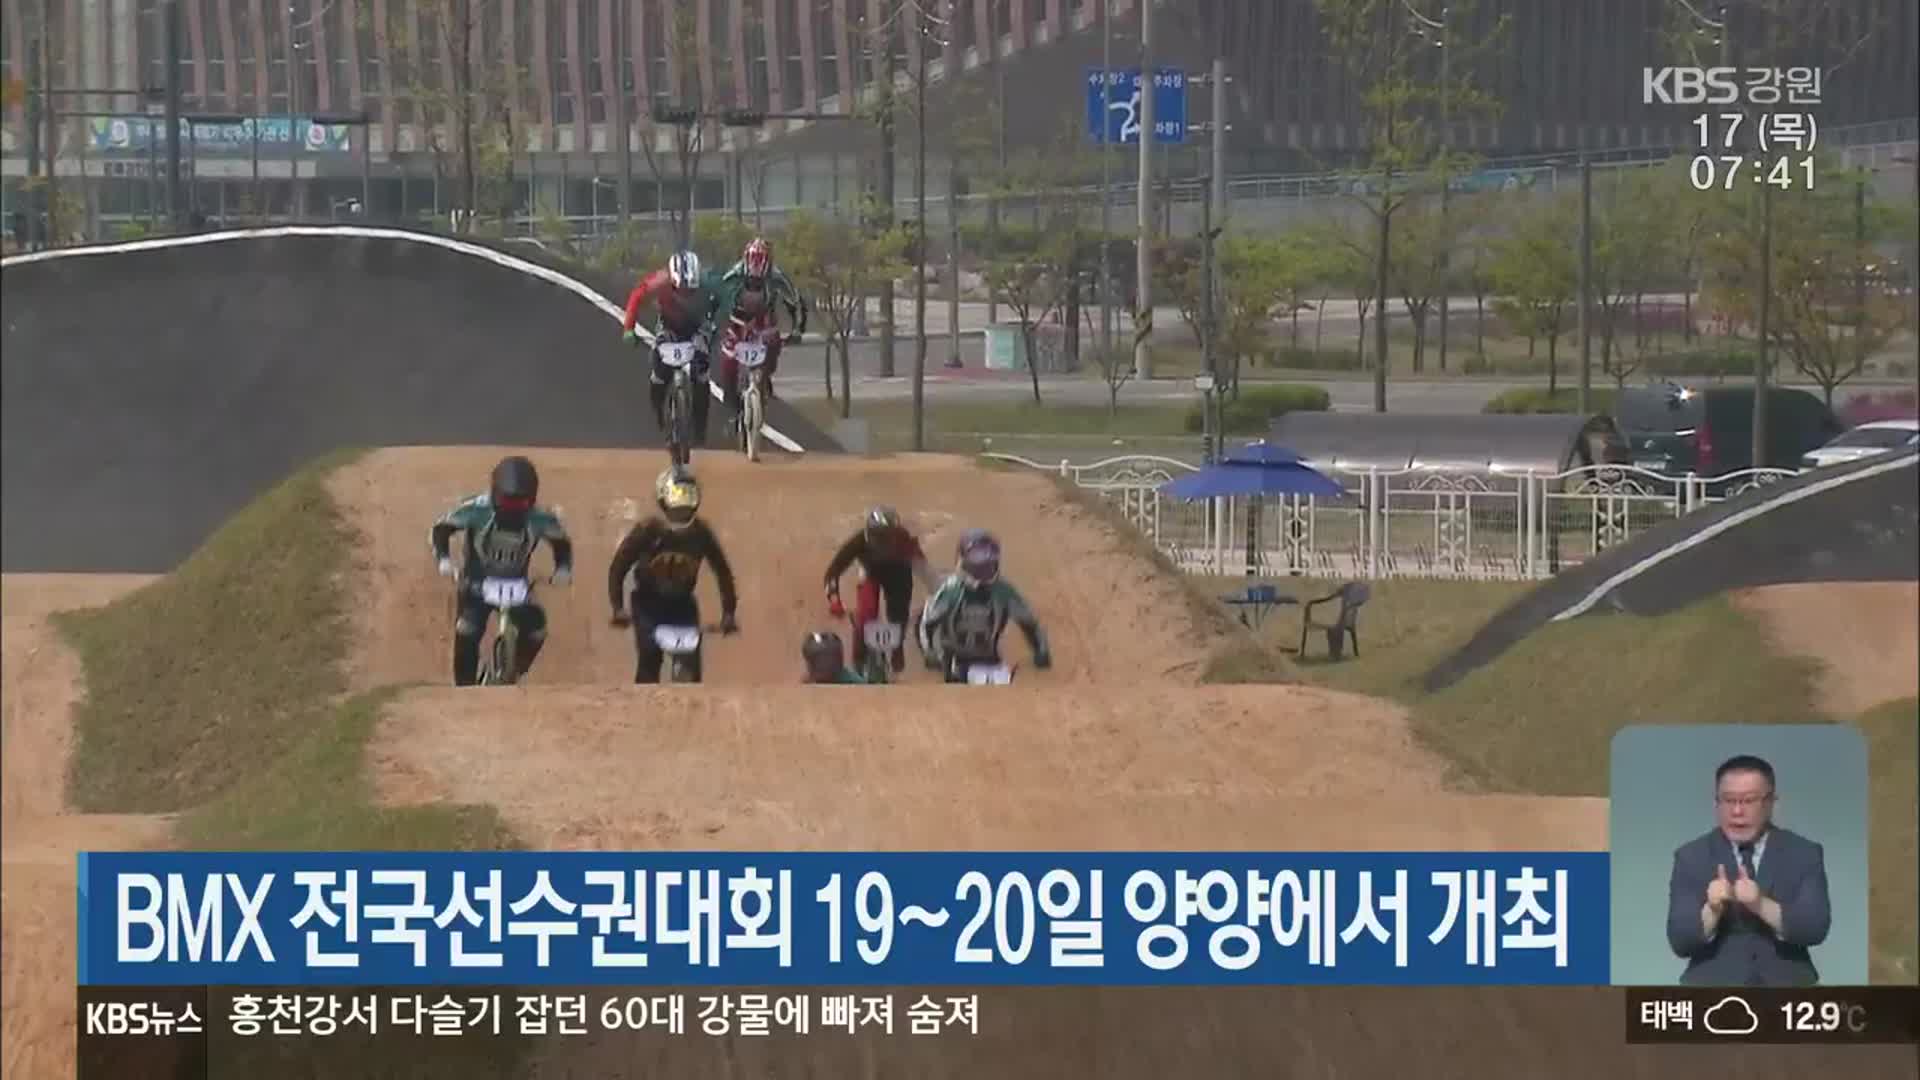 BMX 전국선수권대회 19~20일 양양에서 개최